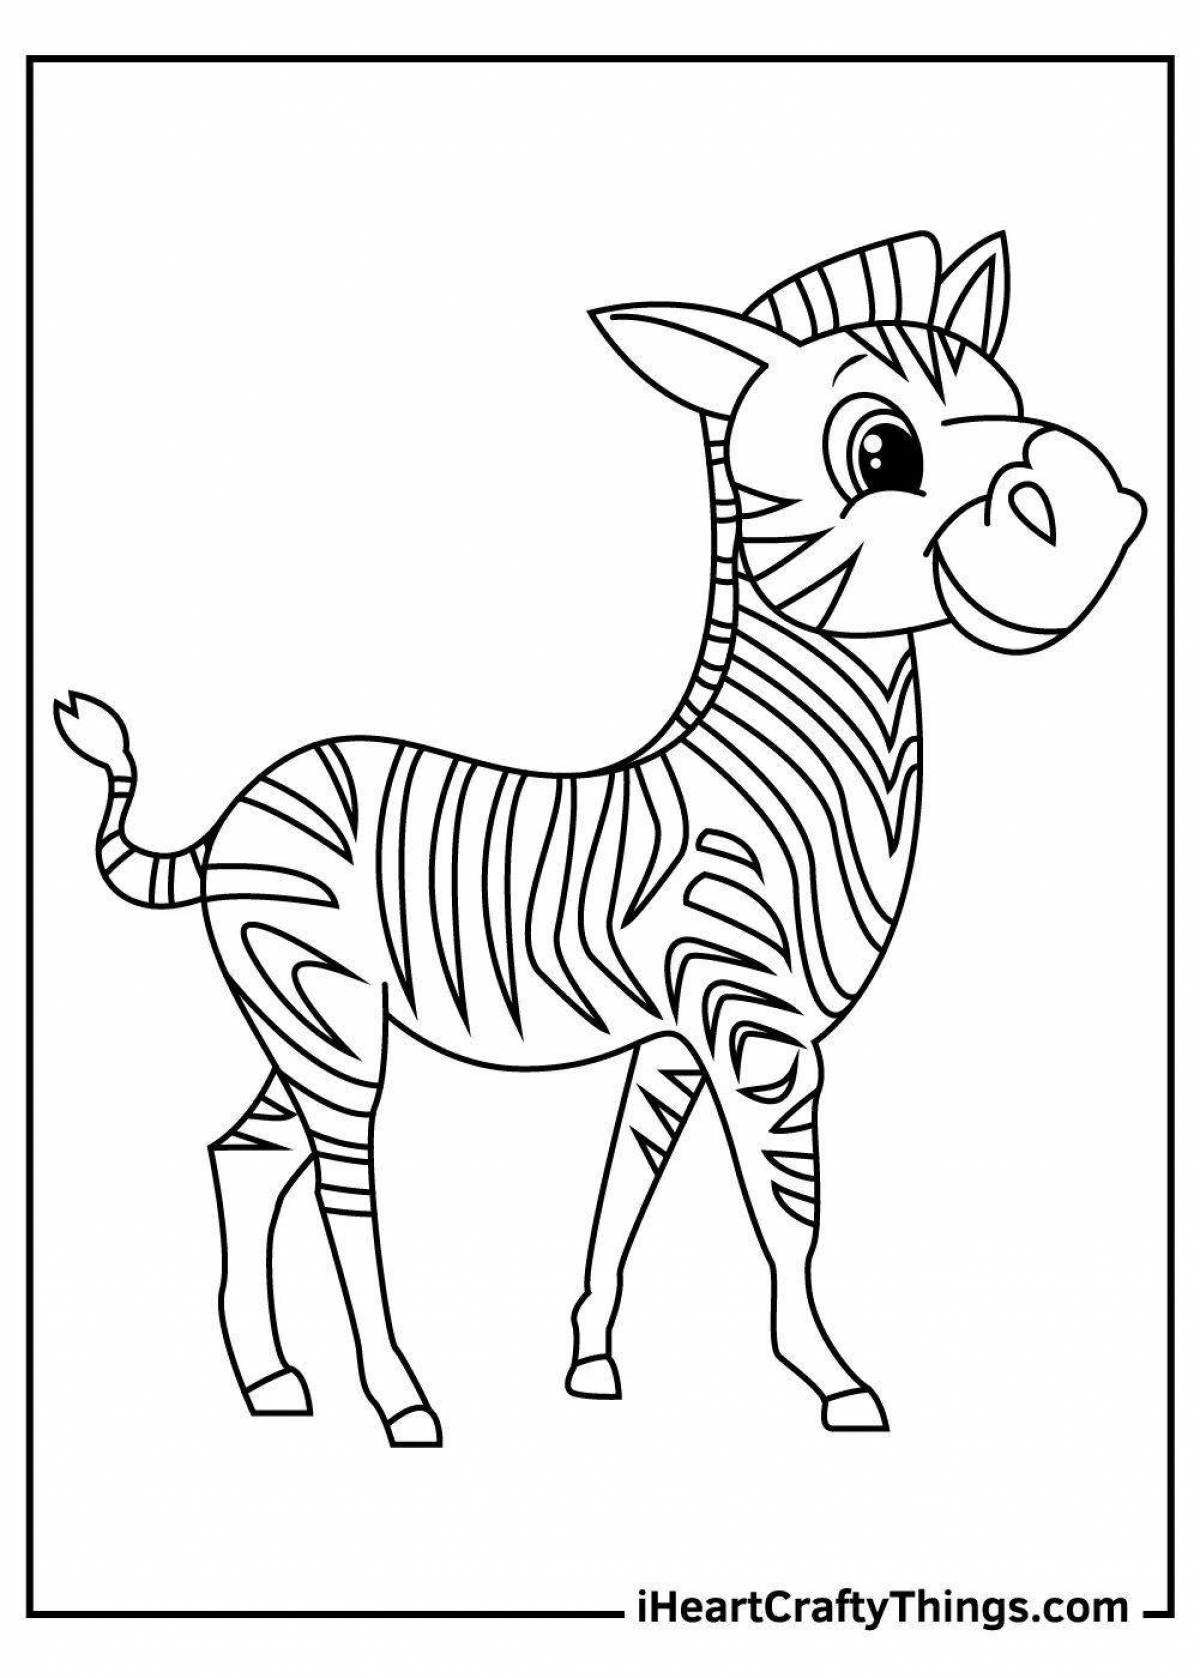 Милая раскраска зебра для детей